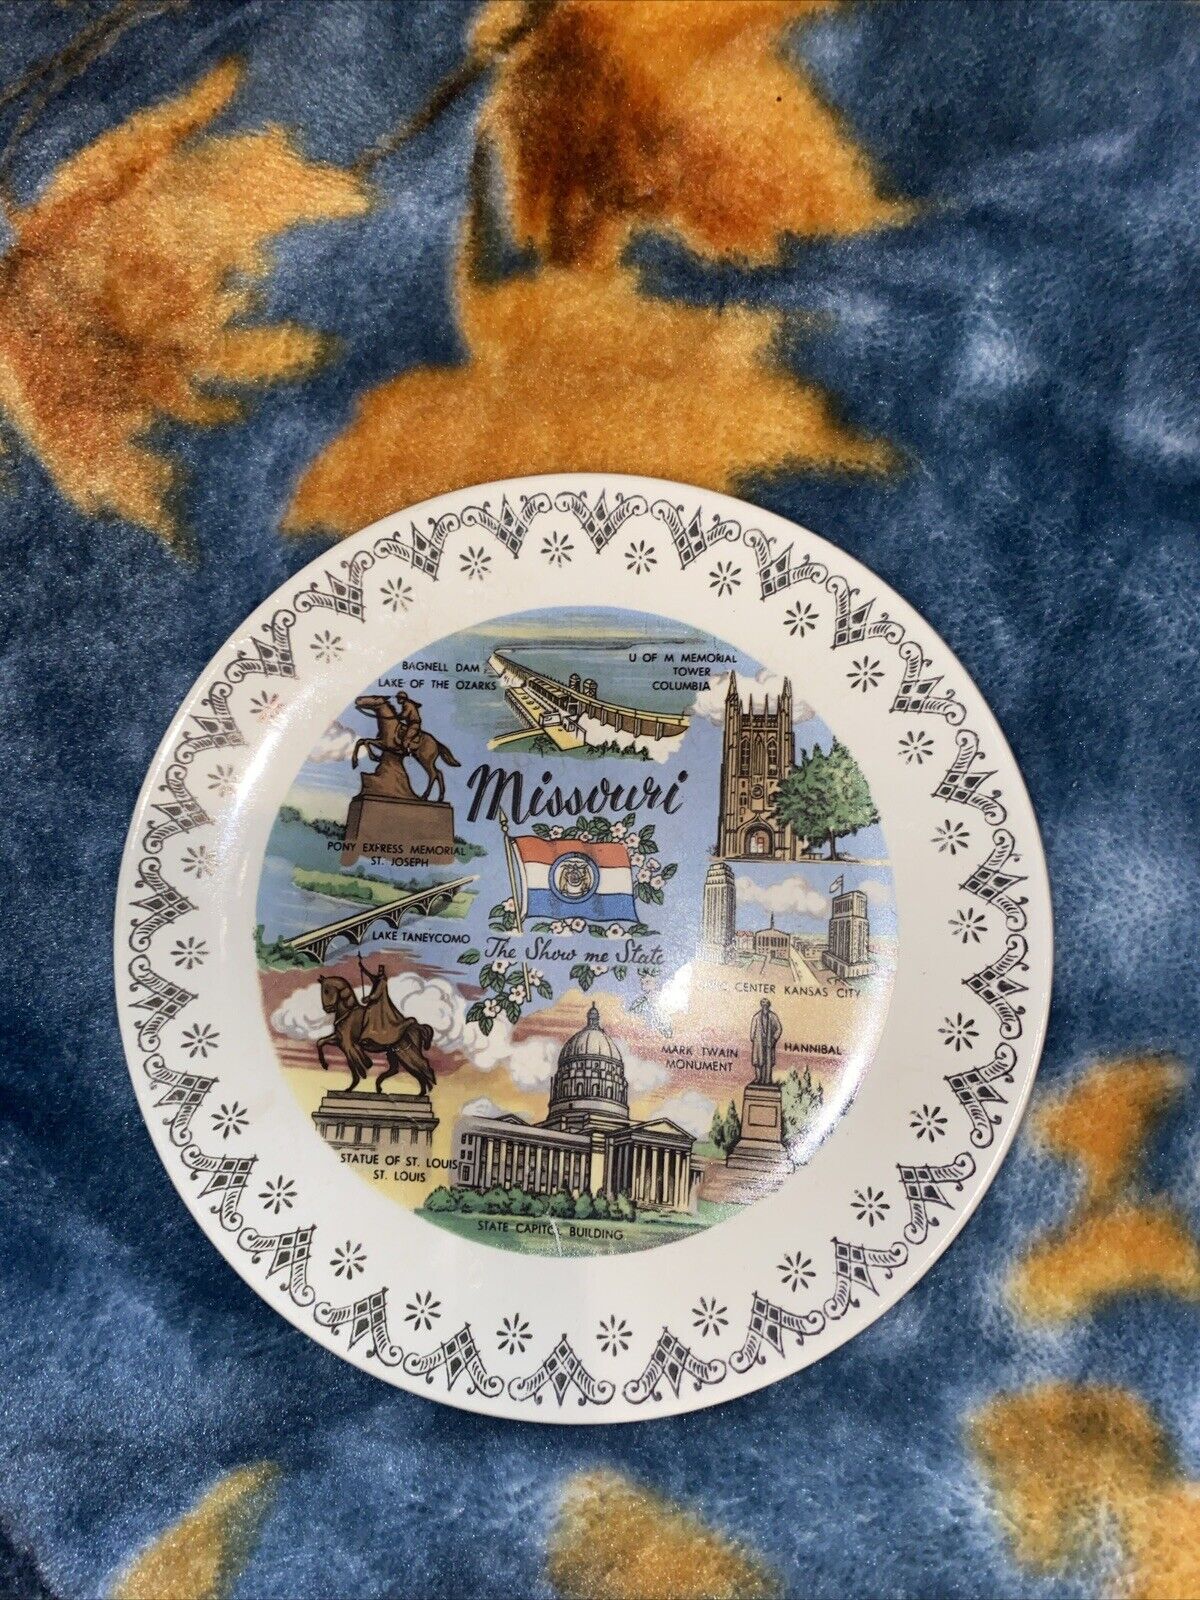 Vintage - Ceramic Missouri Souvenir Plate 1960's Gold Rim - Mint Condition 7.25